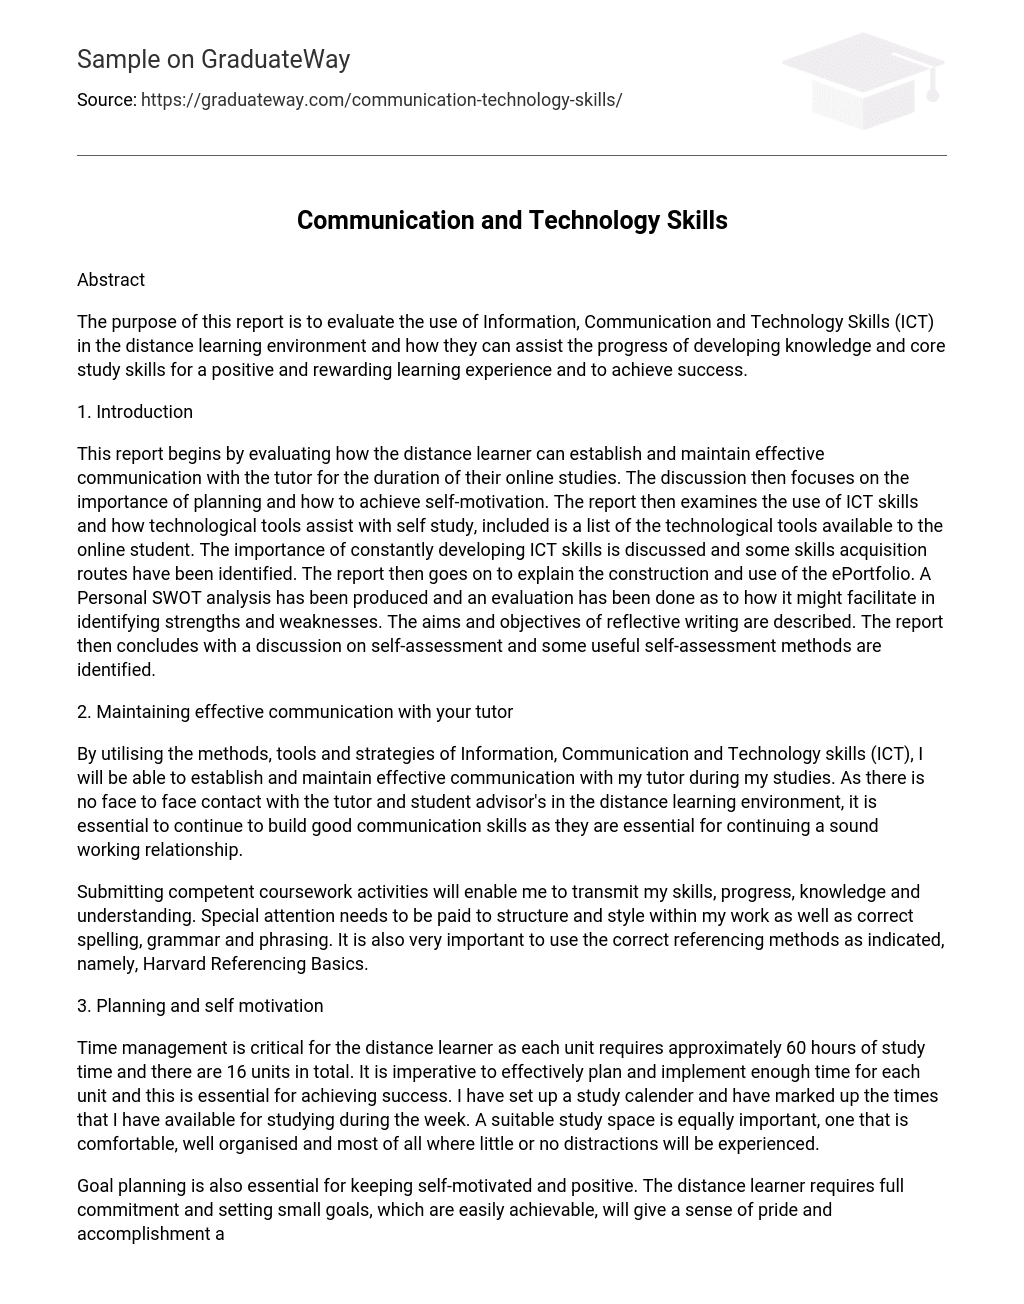 Communication and Technology Skills